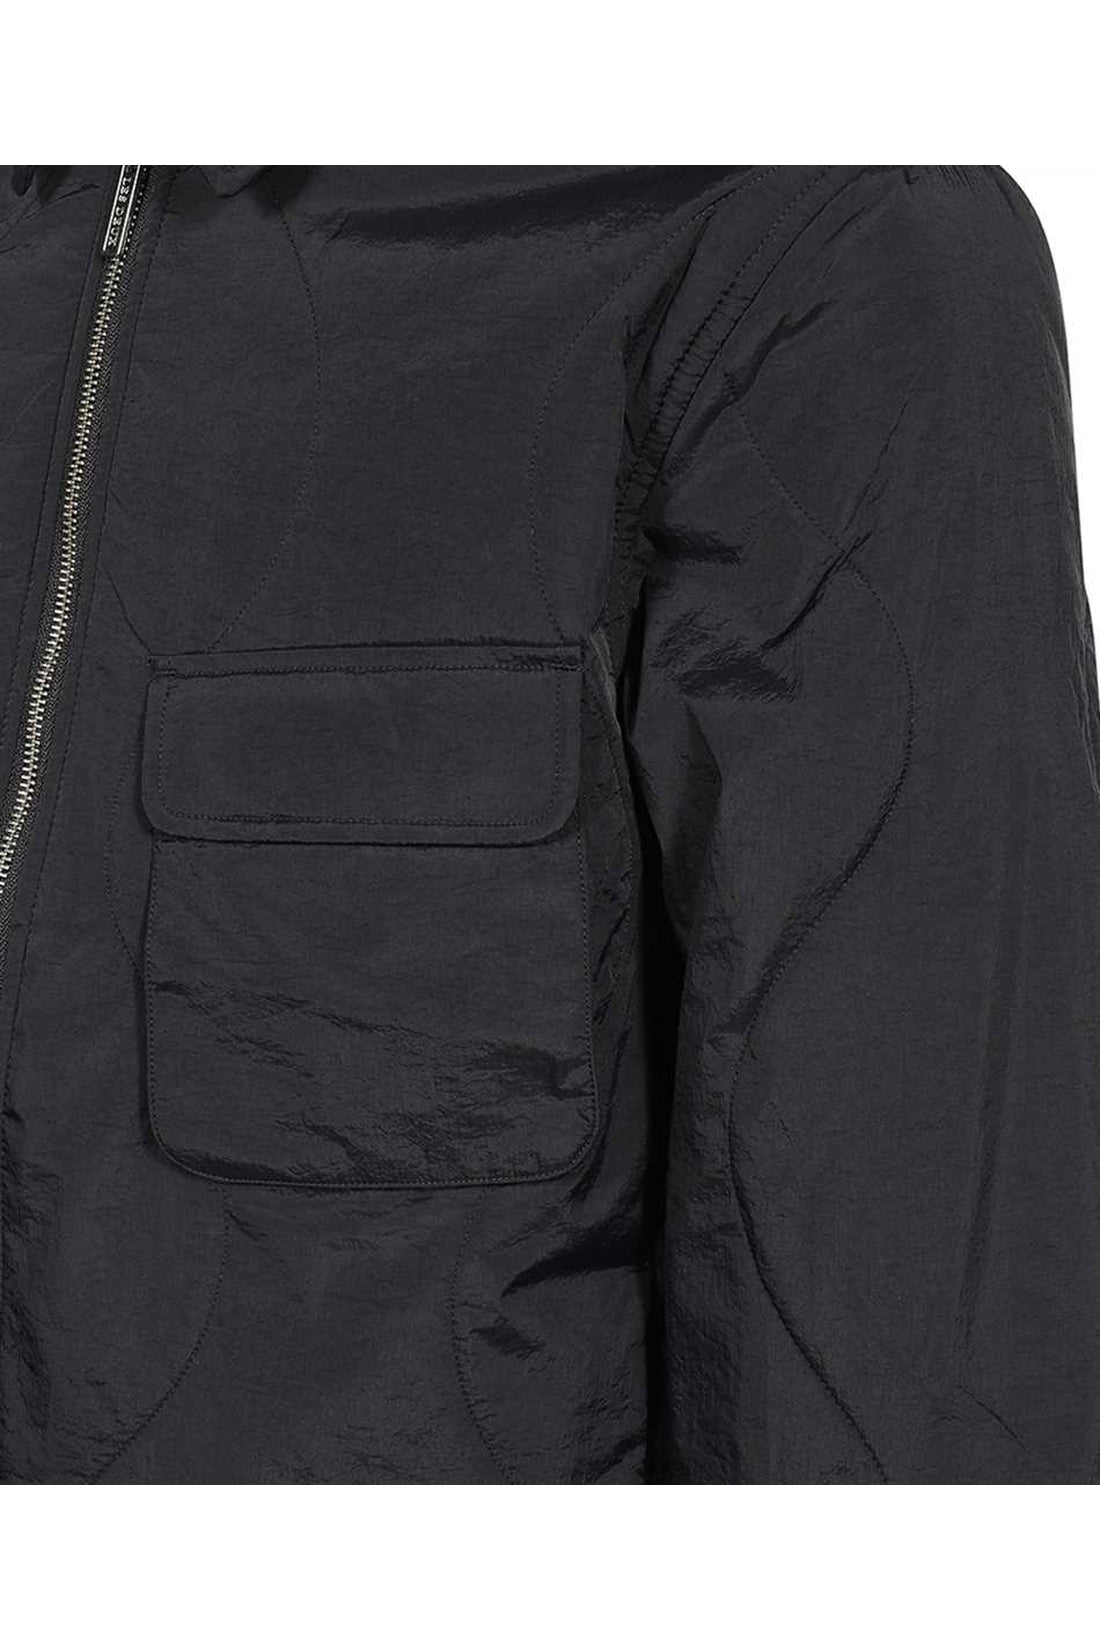 Les Deux-OUTLET-SALE-Nylon jacket-ARCHIVIST